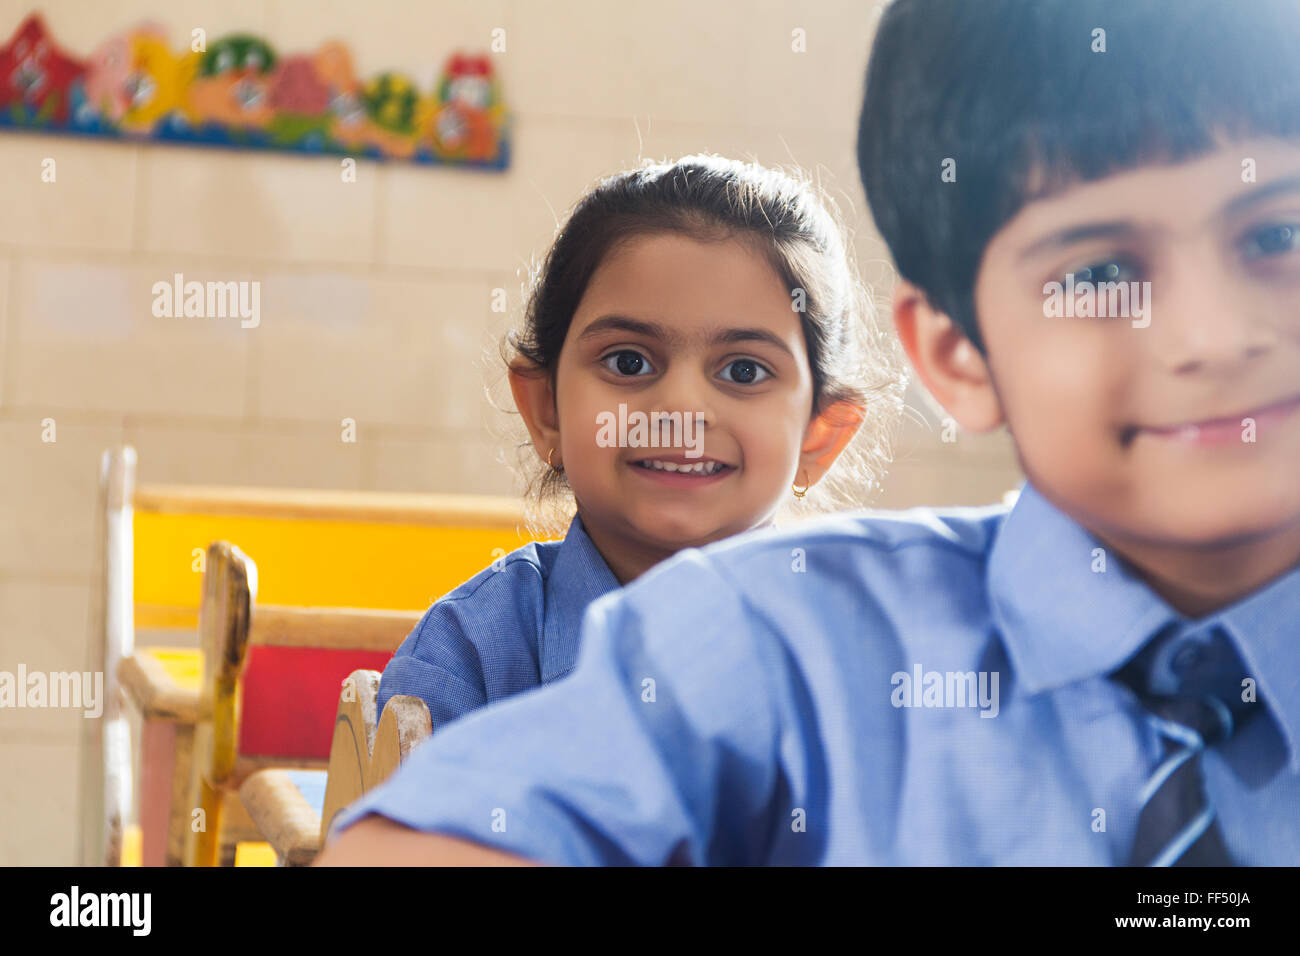 Asien Asien Asiaten Klassenzimmer Szenen Indien indische Inder innen Blick in die Kamera selbst versichert Selbstbewusstsein selbstbewusst Stockfoto